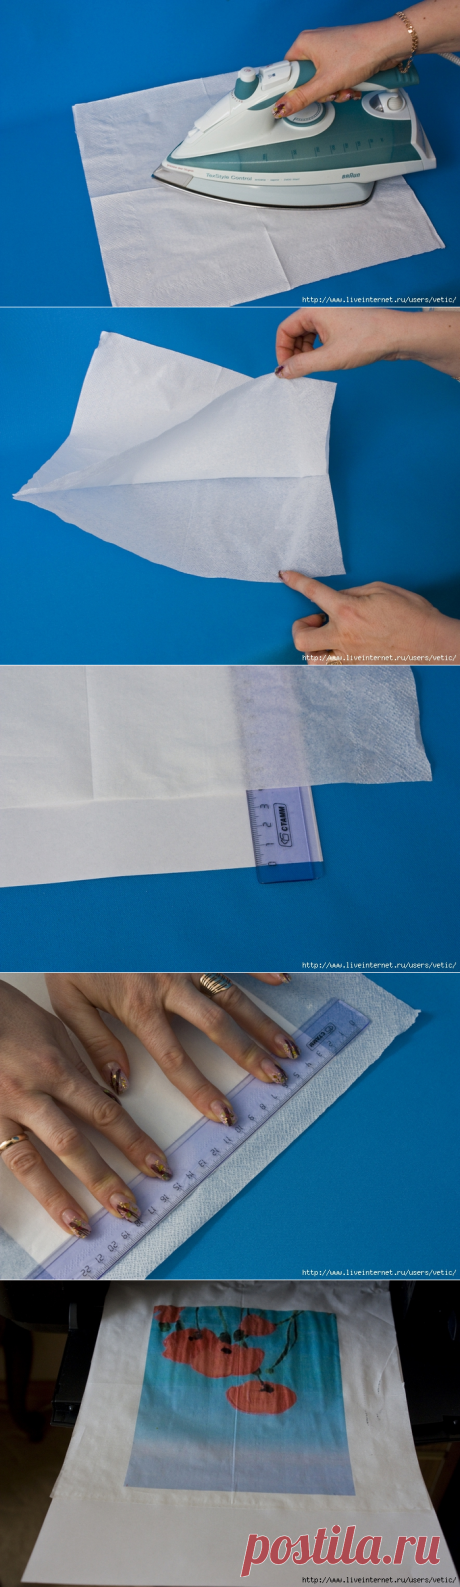 Как распечатывать на салфетках на принтере